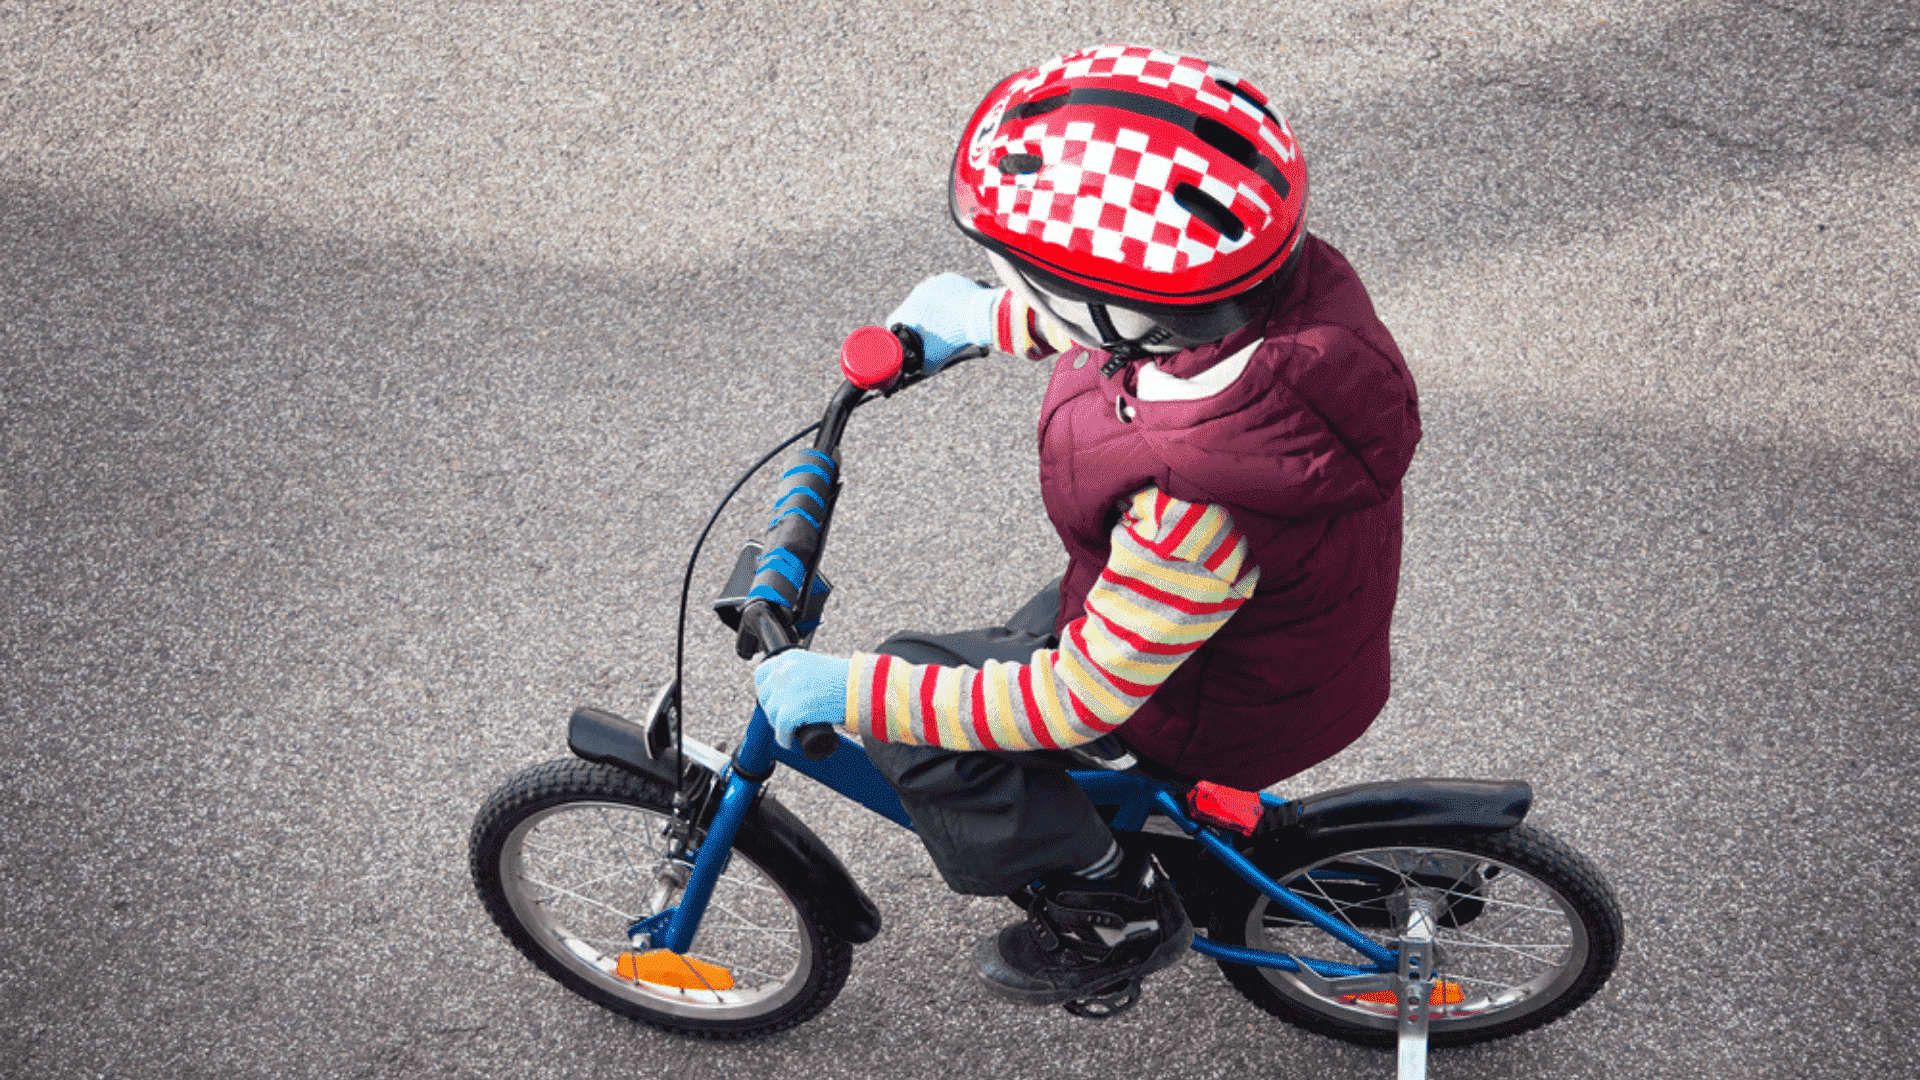 Confira o nosso Guia de Compras e veja como escolher uma bicicleta infantil para comprar (Imagem: Reprodução/Shutterstock)